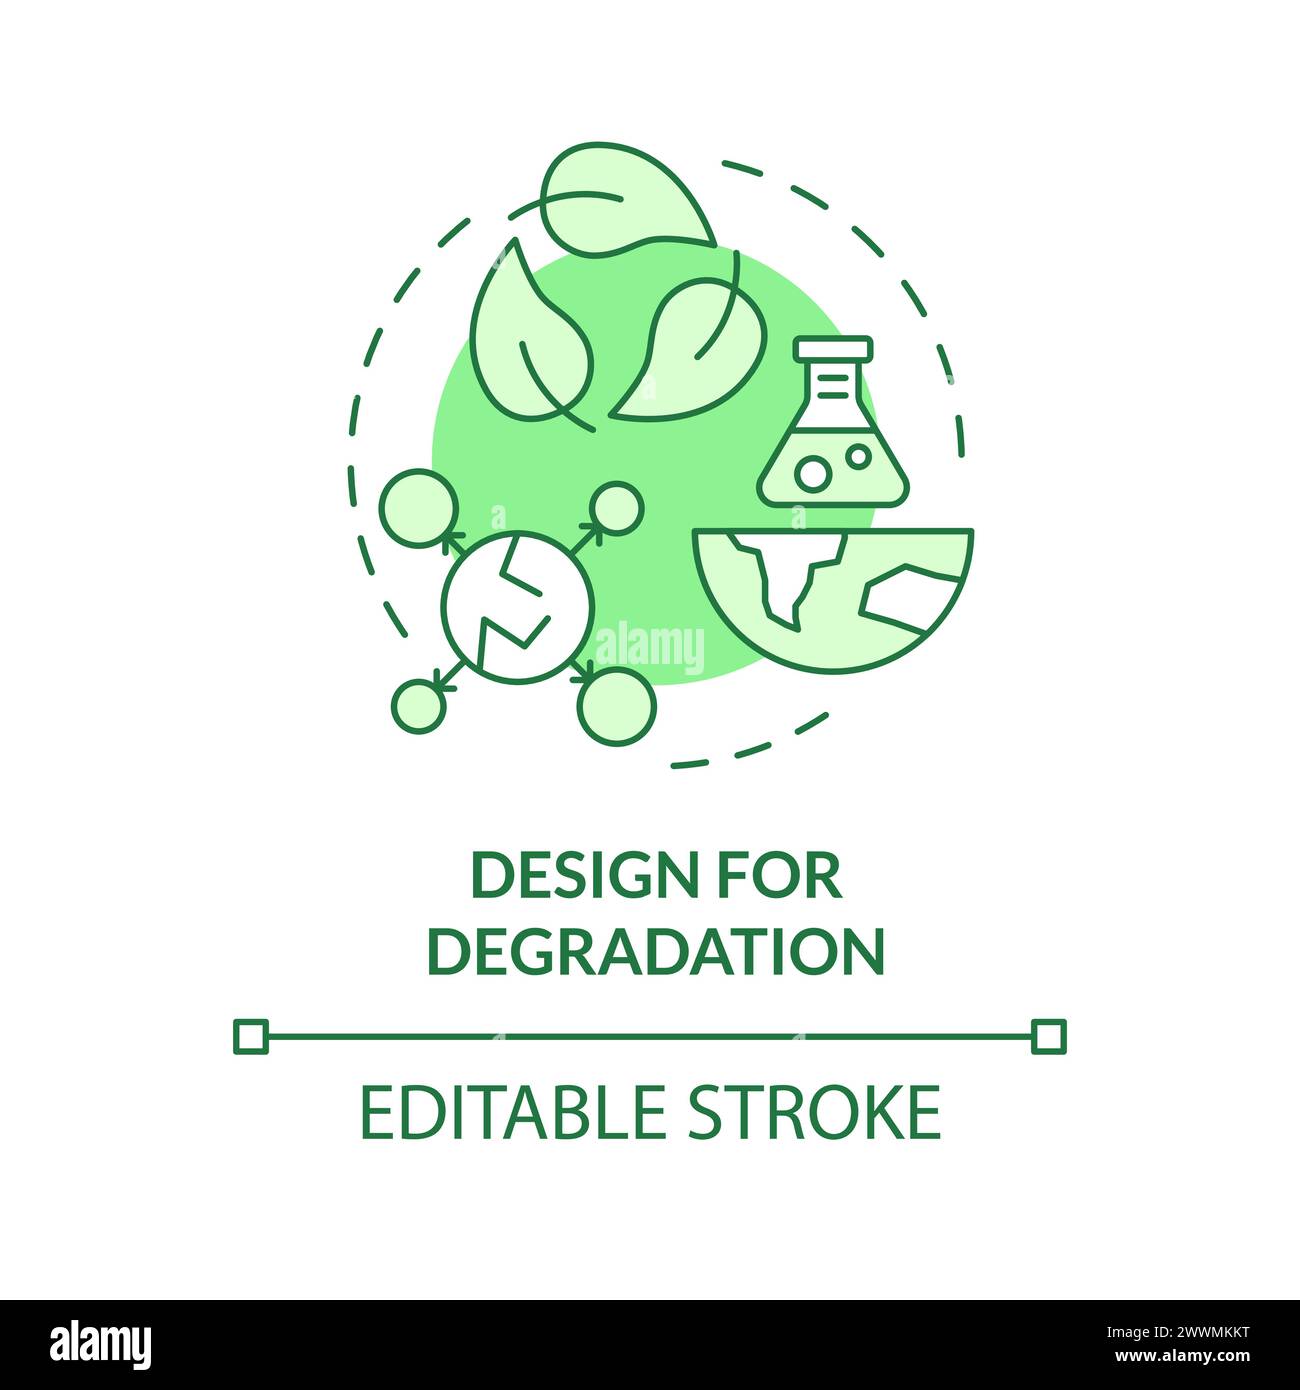 Design for degradation green concept icon Stock Vector